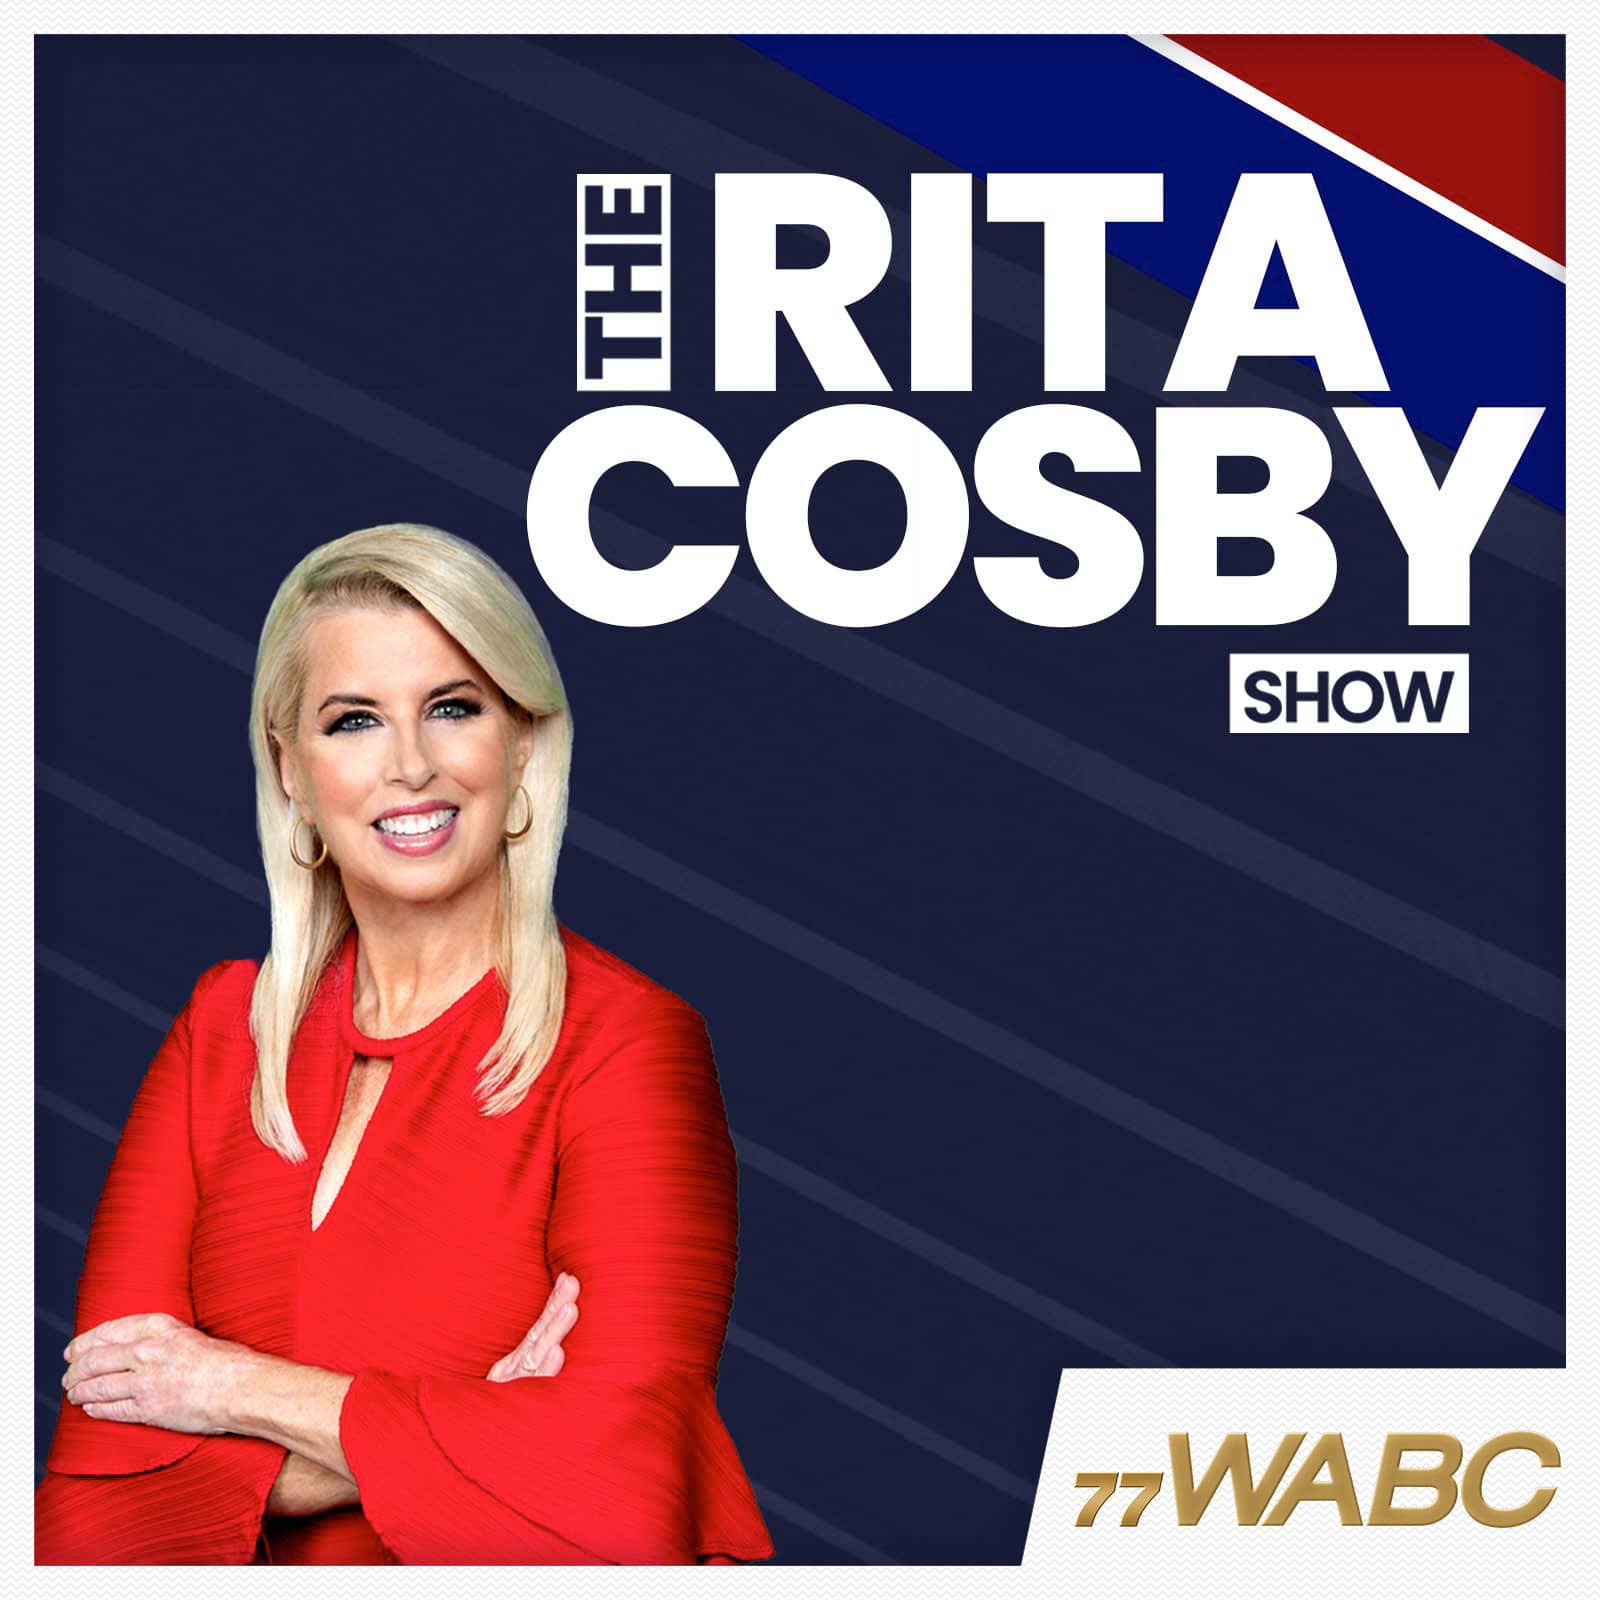 rita-cosby-podcast-new-logo750939